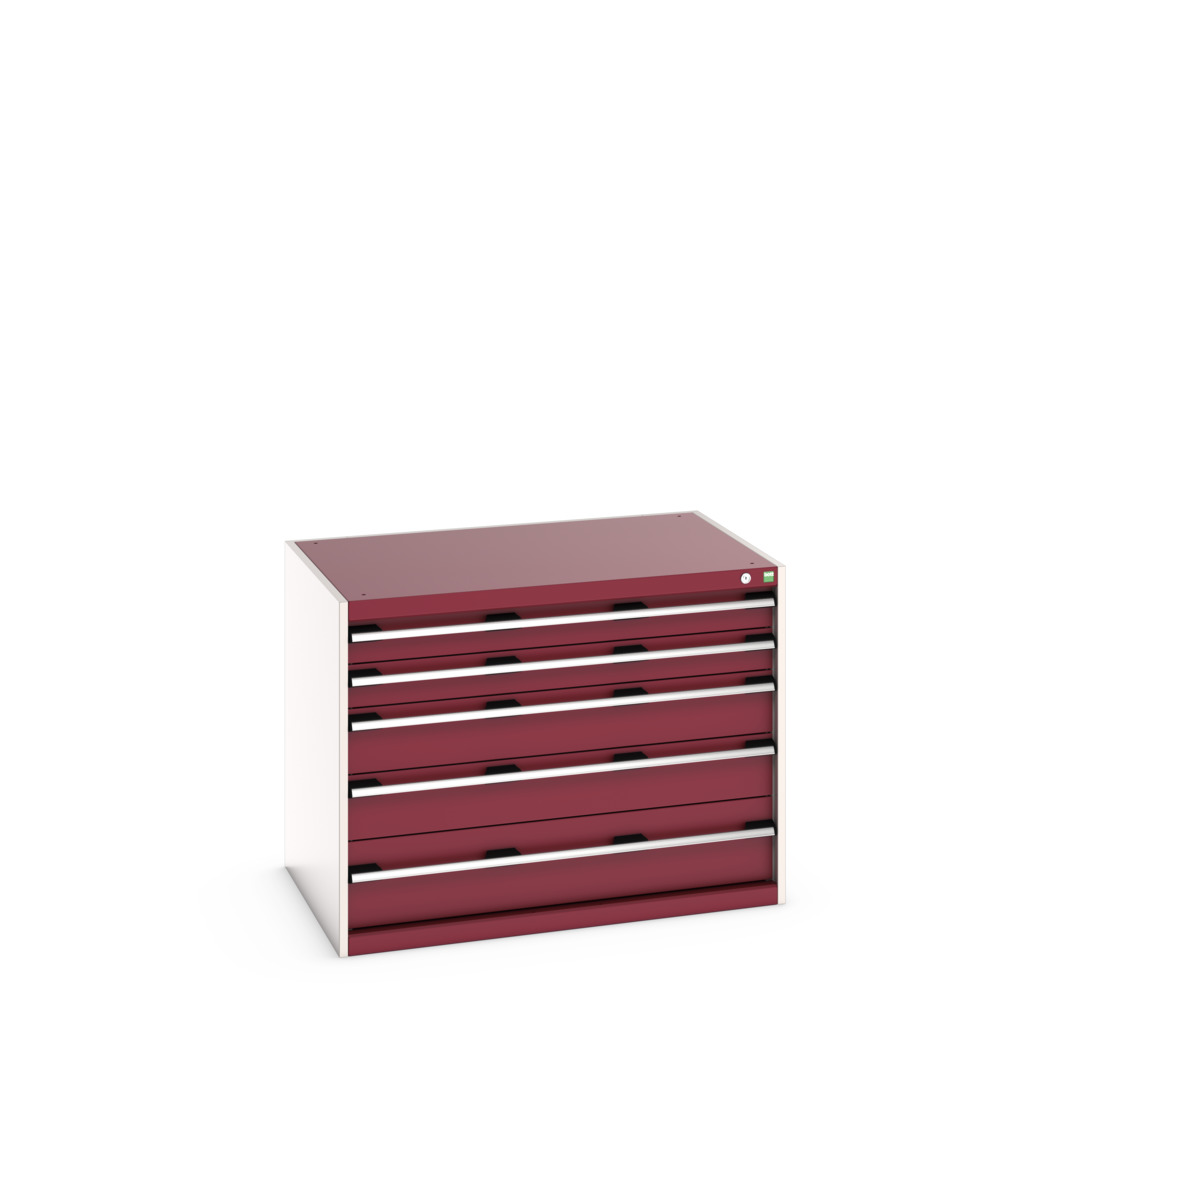 40029009.24V - cubio drawer cabinet